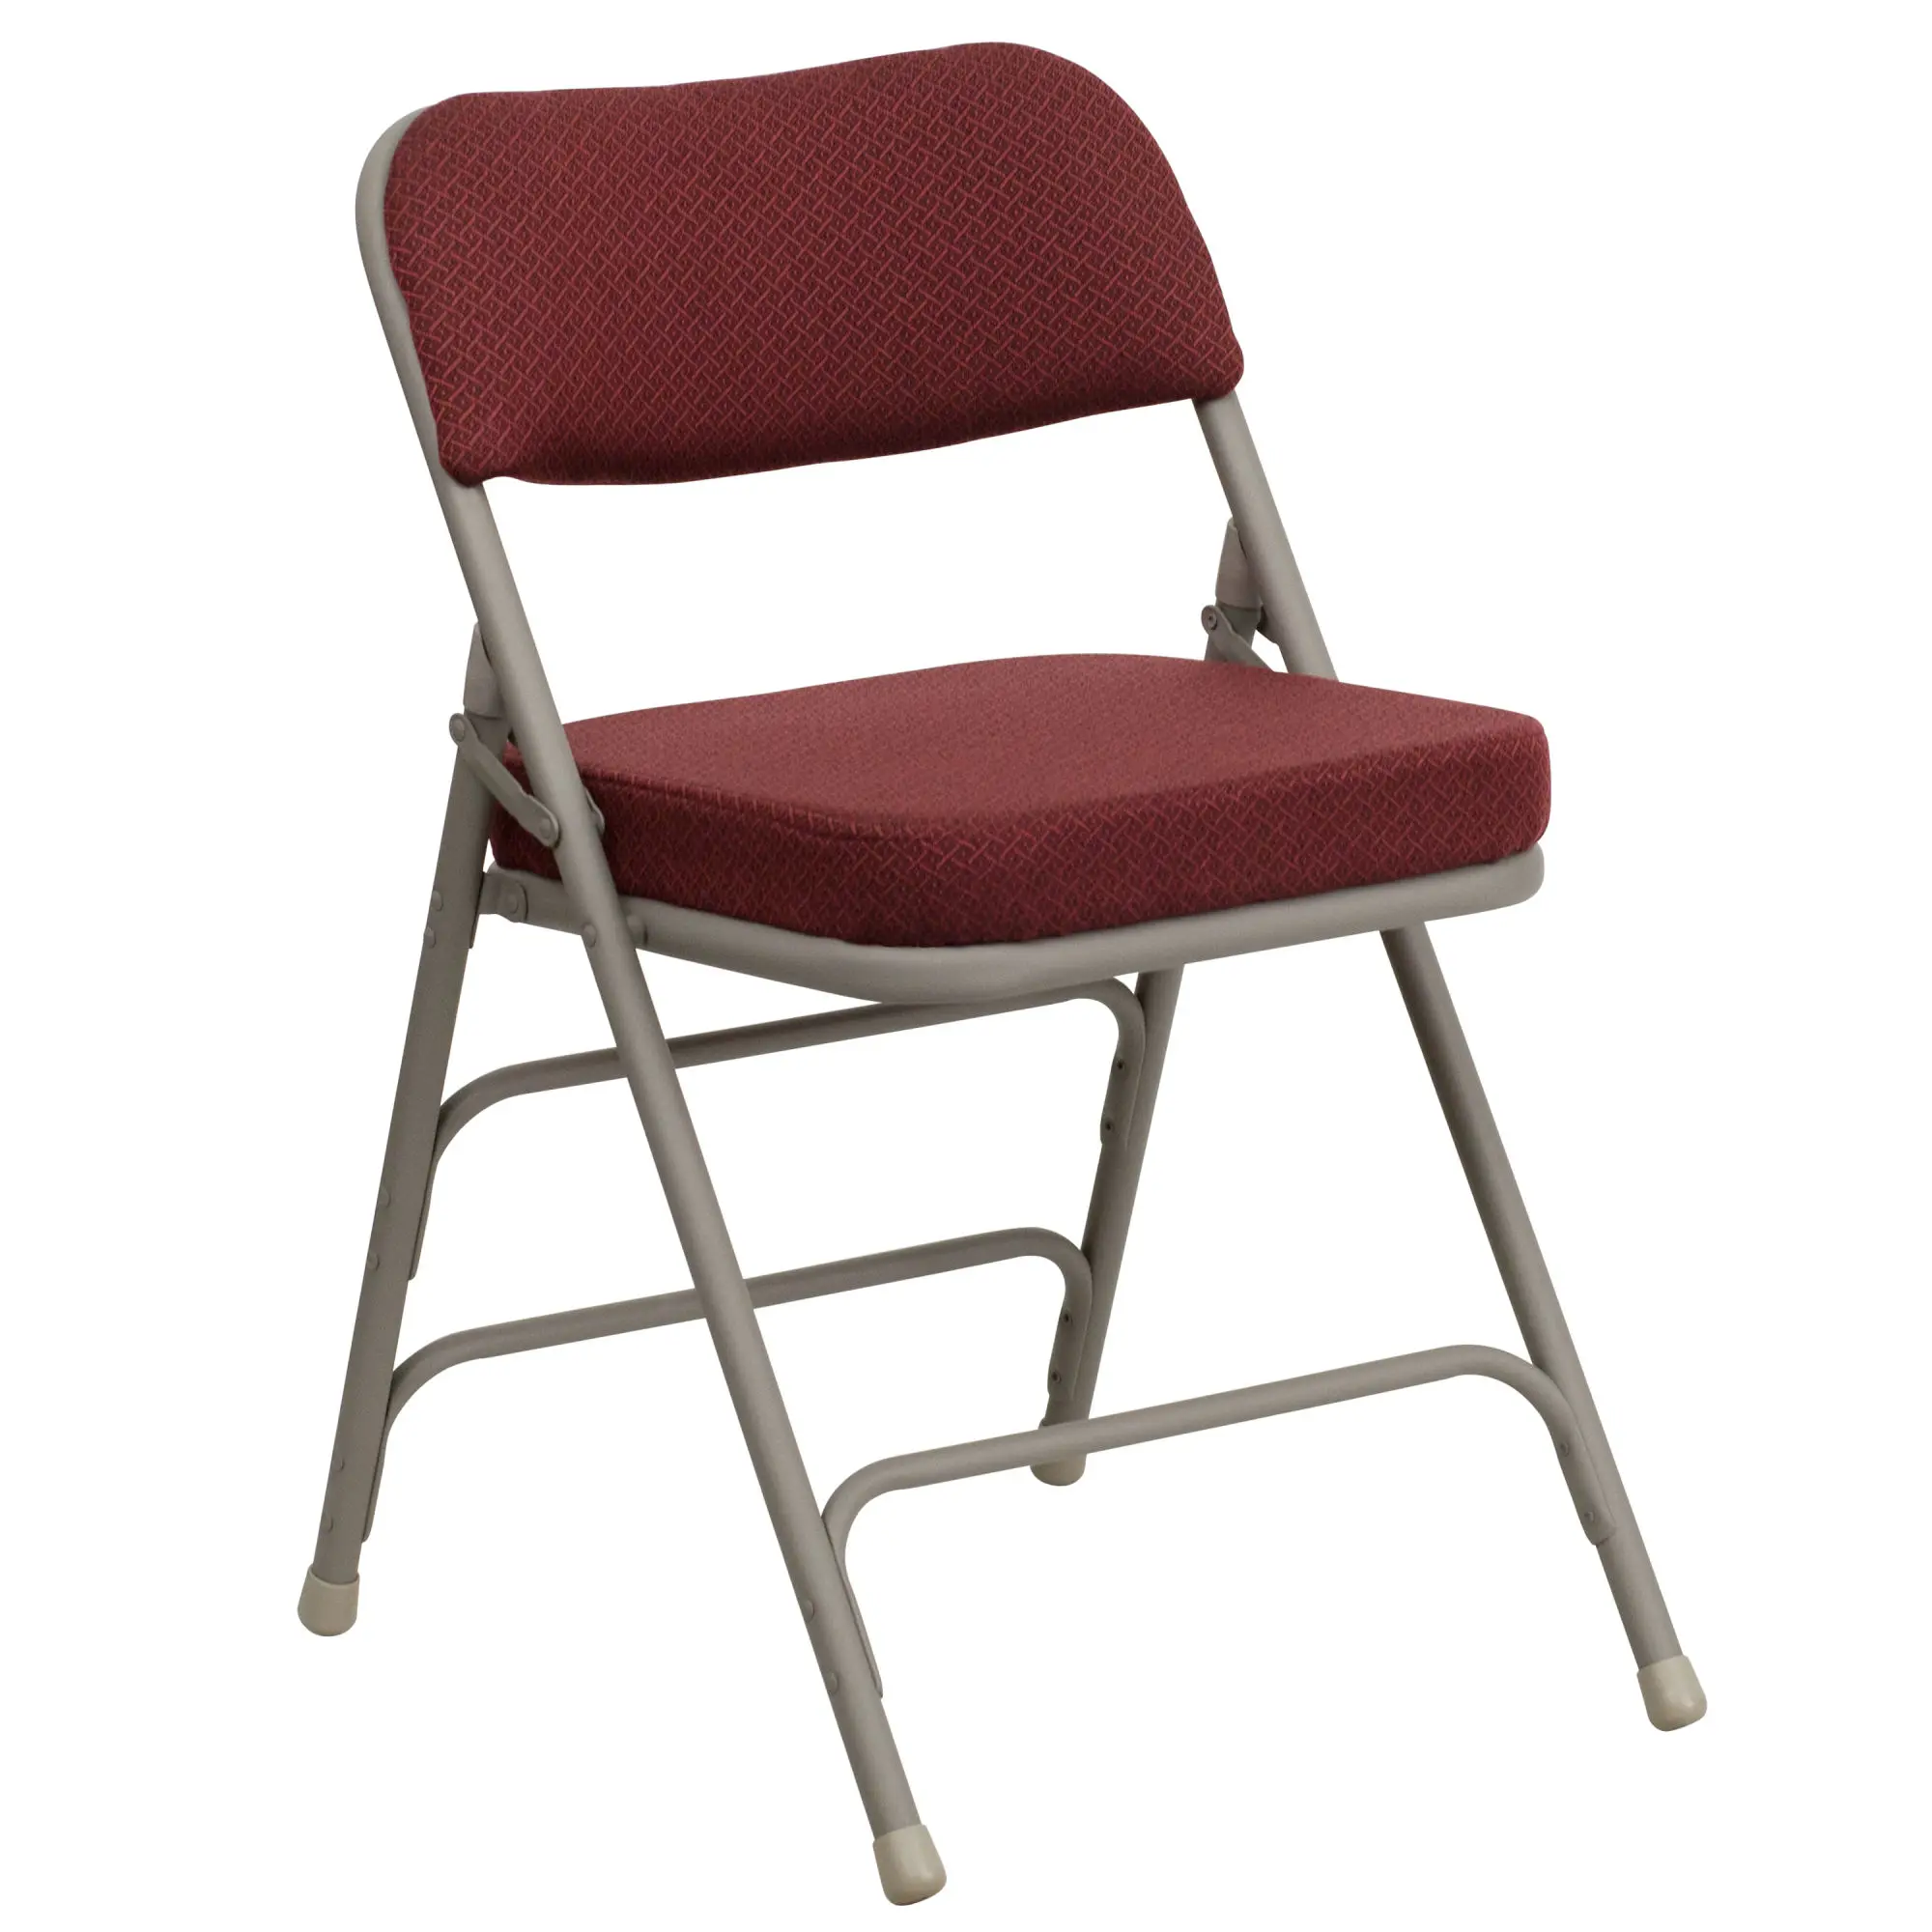 Стул складной офисный. Pelliot стул складной pelliot. Складной стул c055 (10). Офисный раскладной стул. Складные офисные стулья.